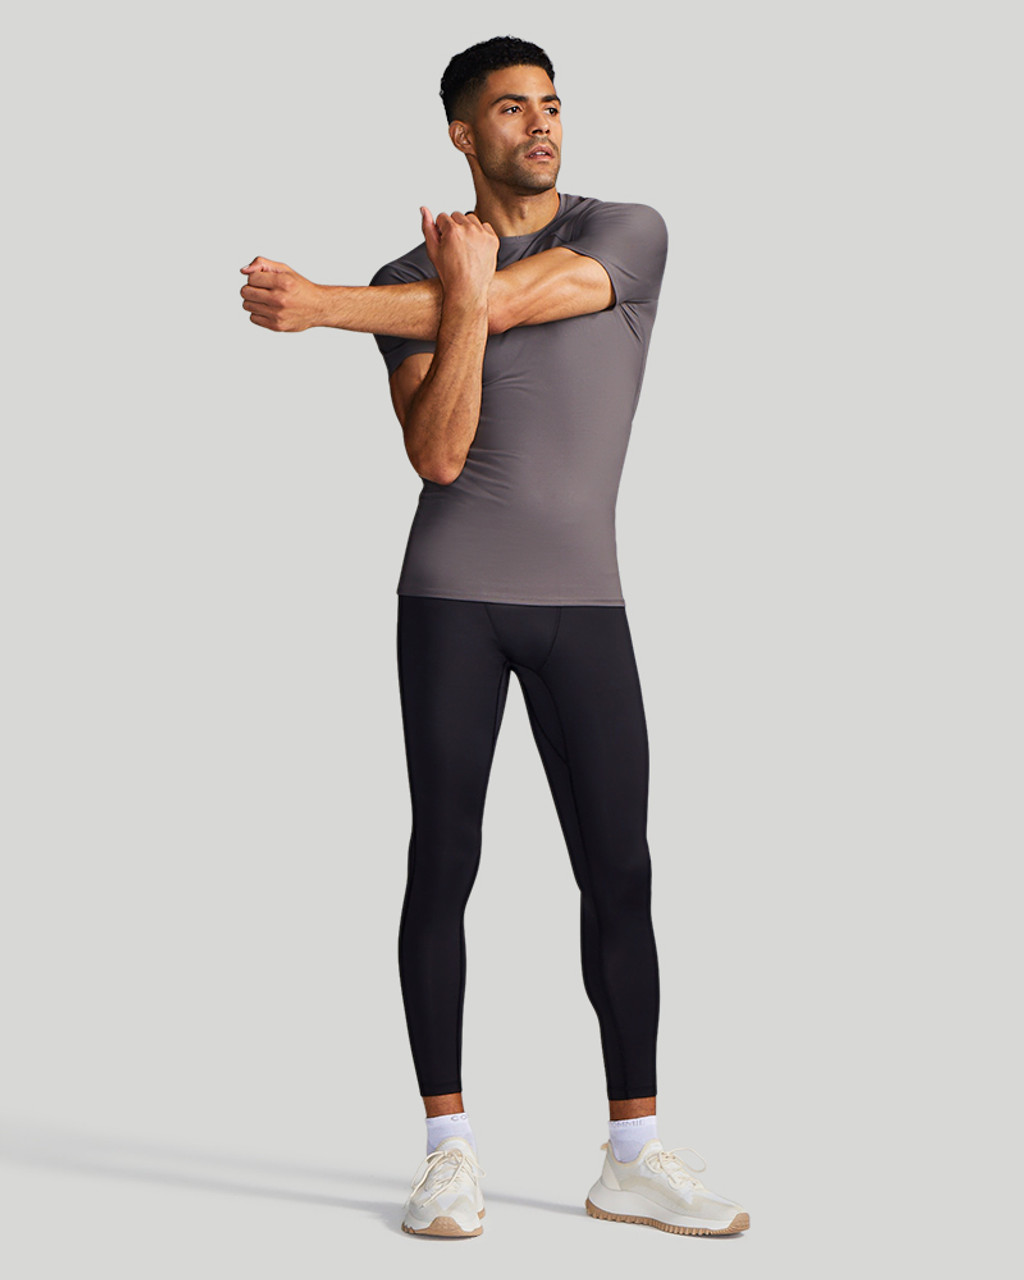 Men's Posture Shirt  Shop Tommie Copper® Compression Now